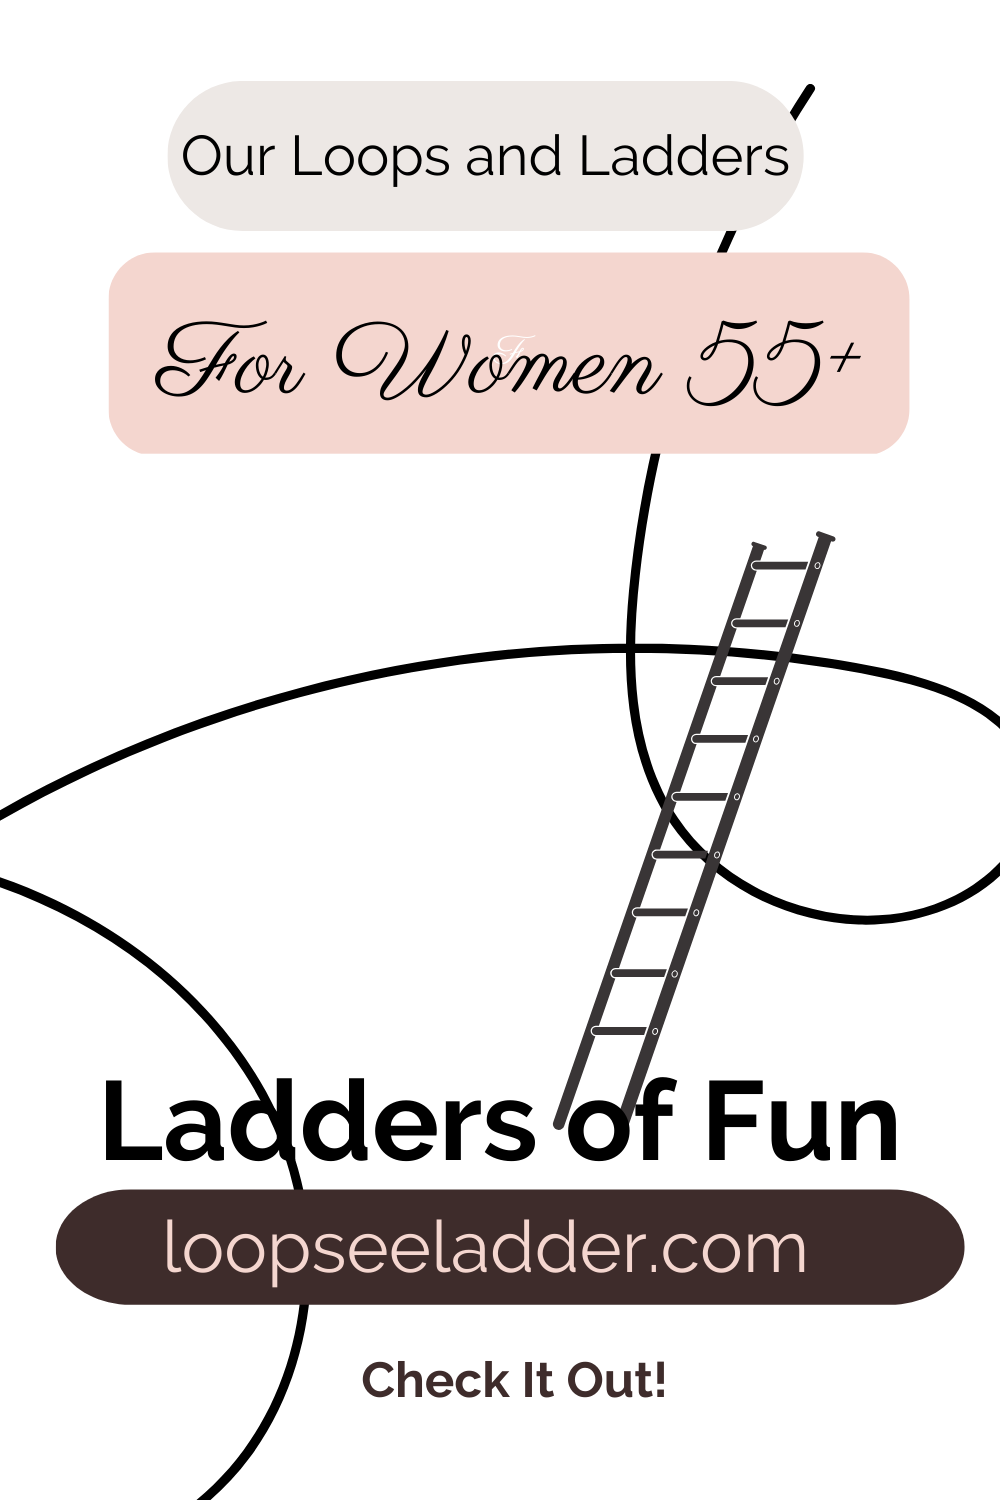 Ladders of Fun!